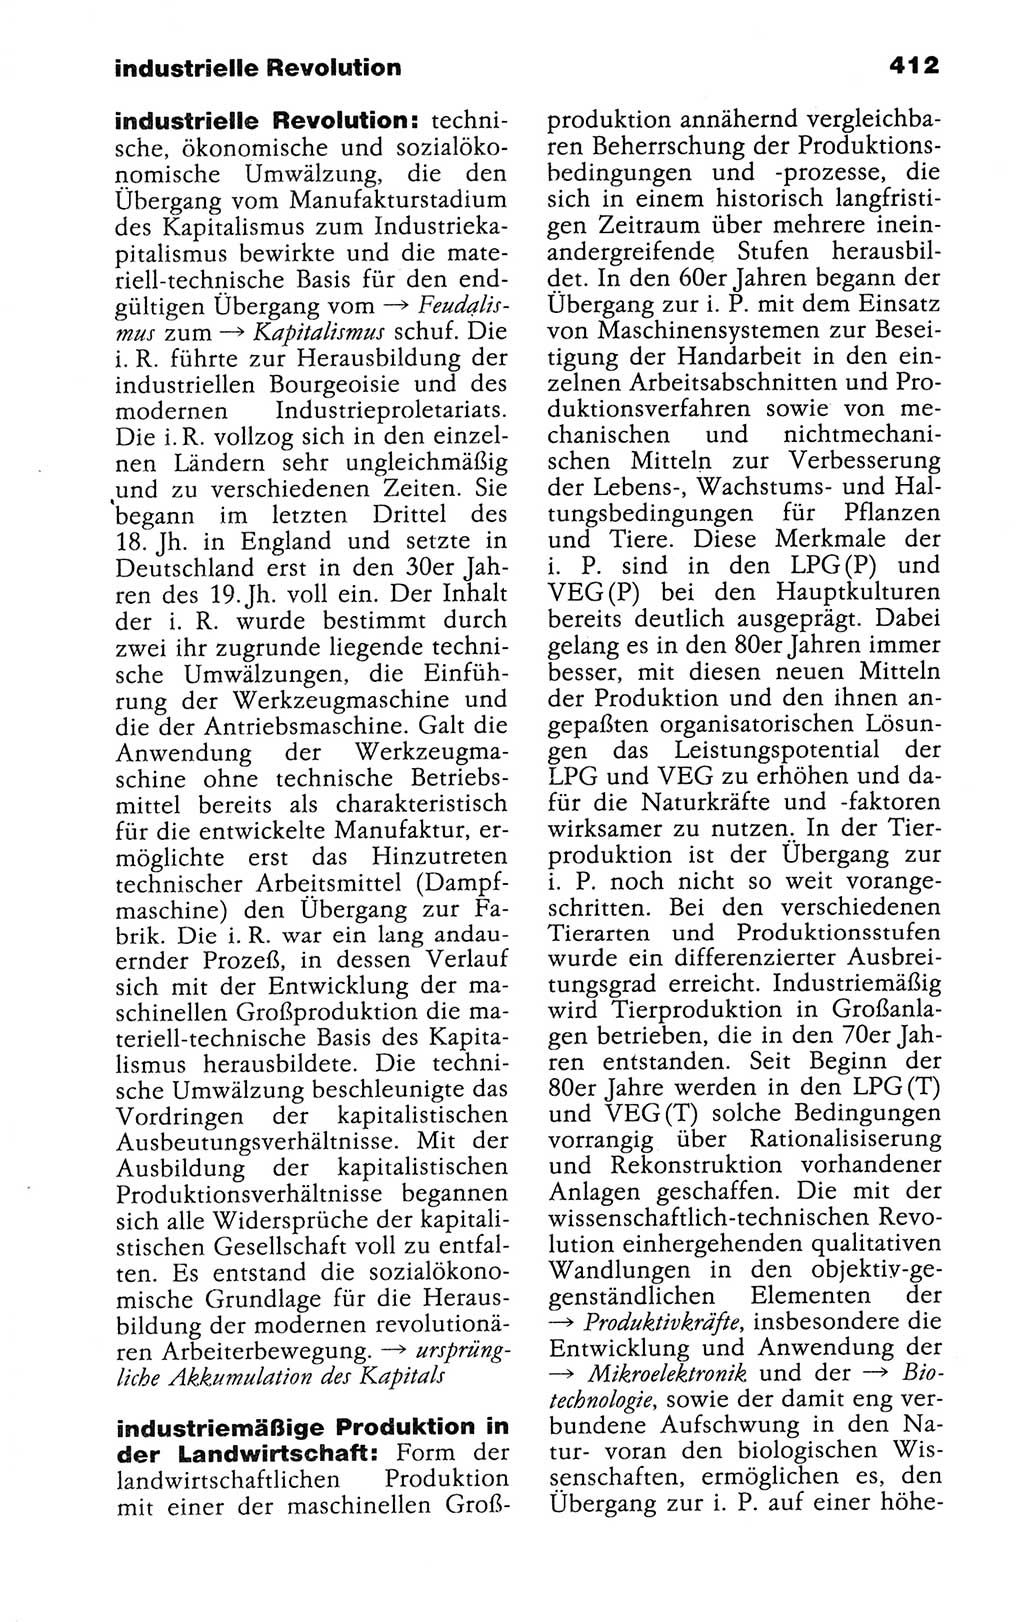 Kleines politisches Wörterbuch [Deutsche Demokratische Republik (DDR)] 1988, Seite 412 (Kl. pol. Wb. DDR 1988, S. 412)